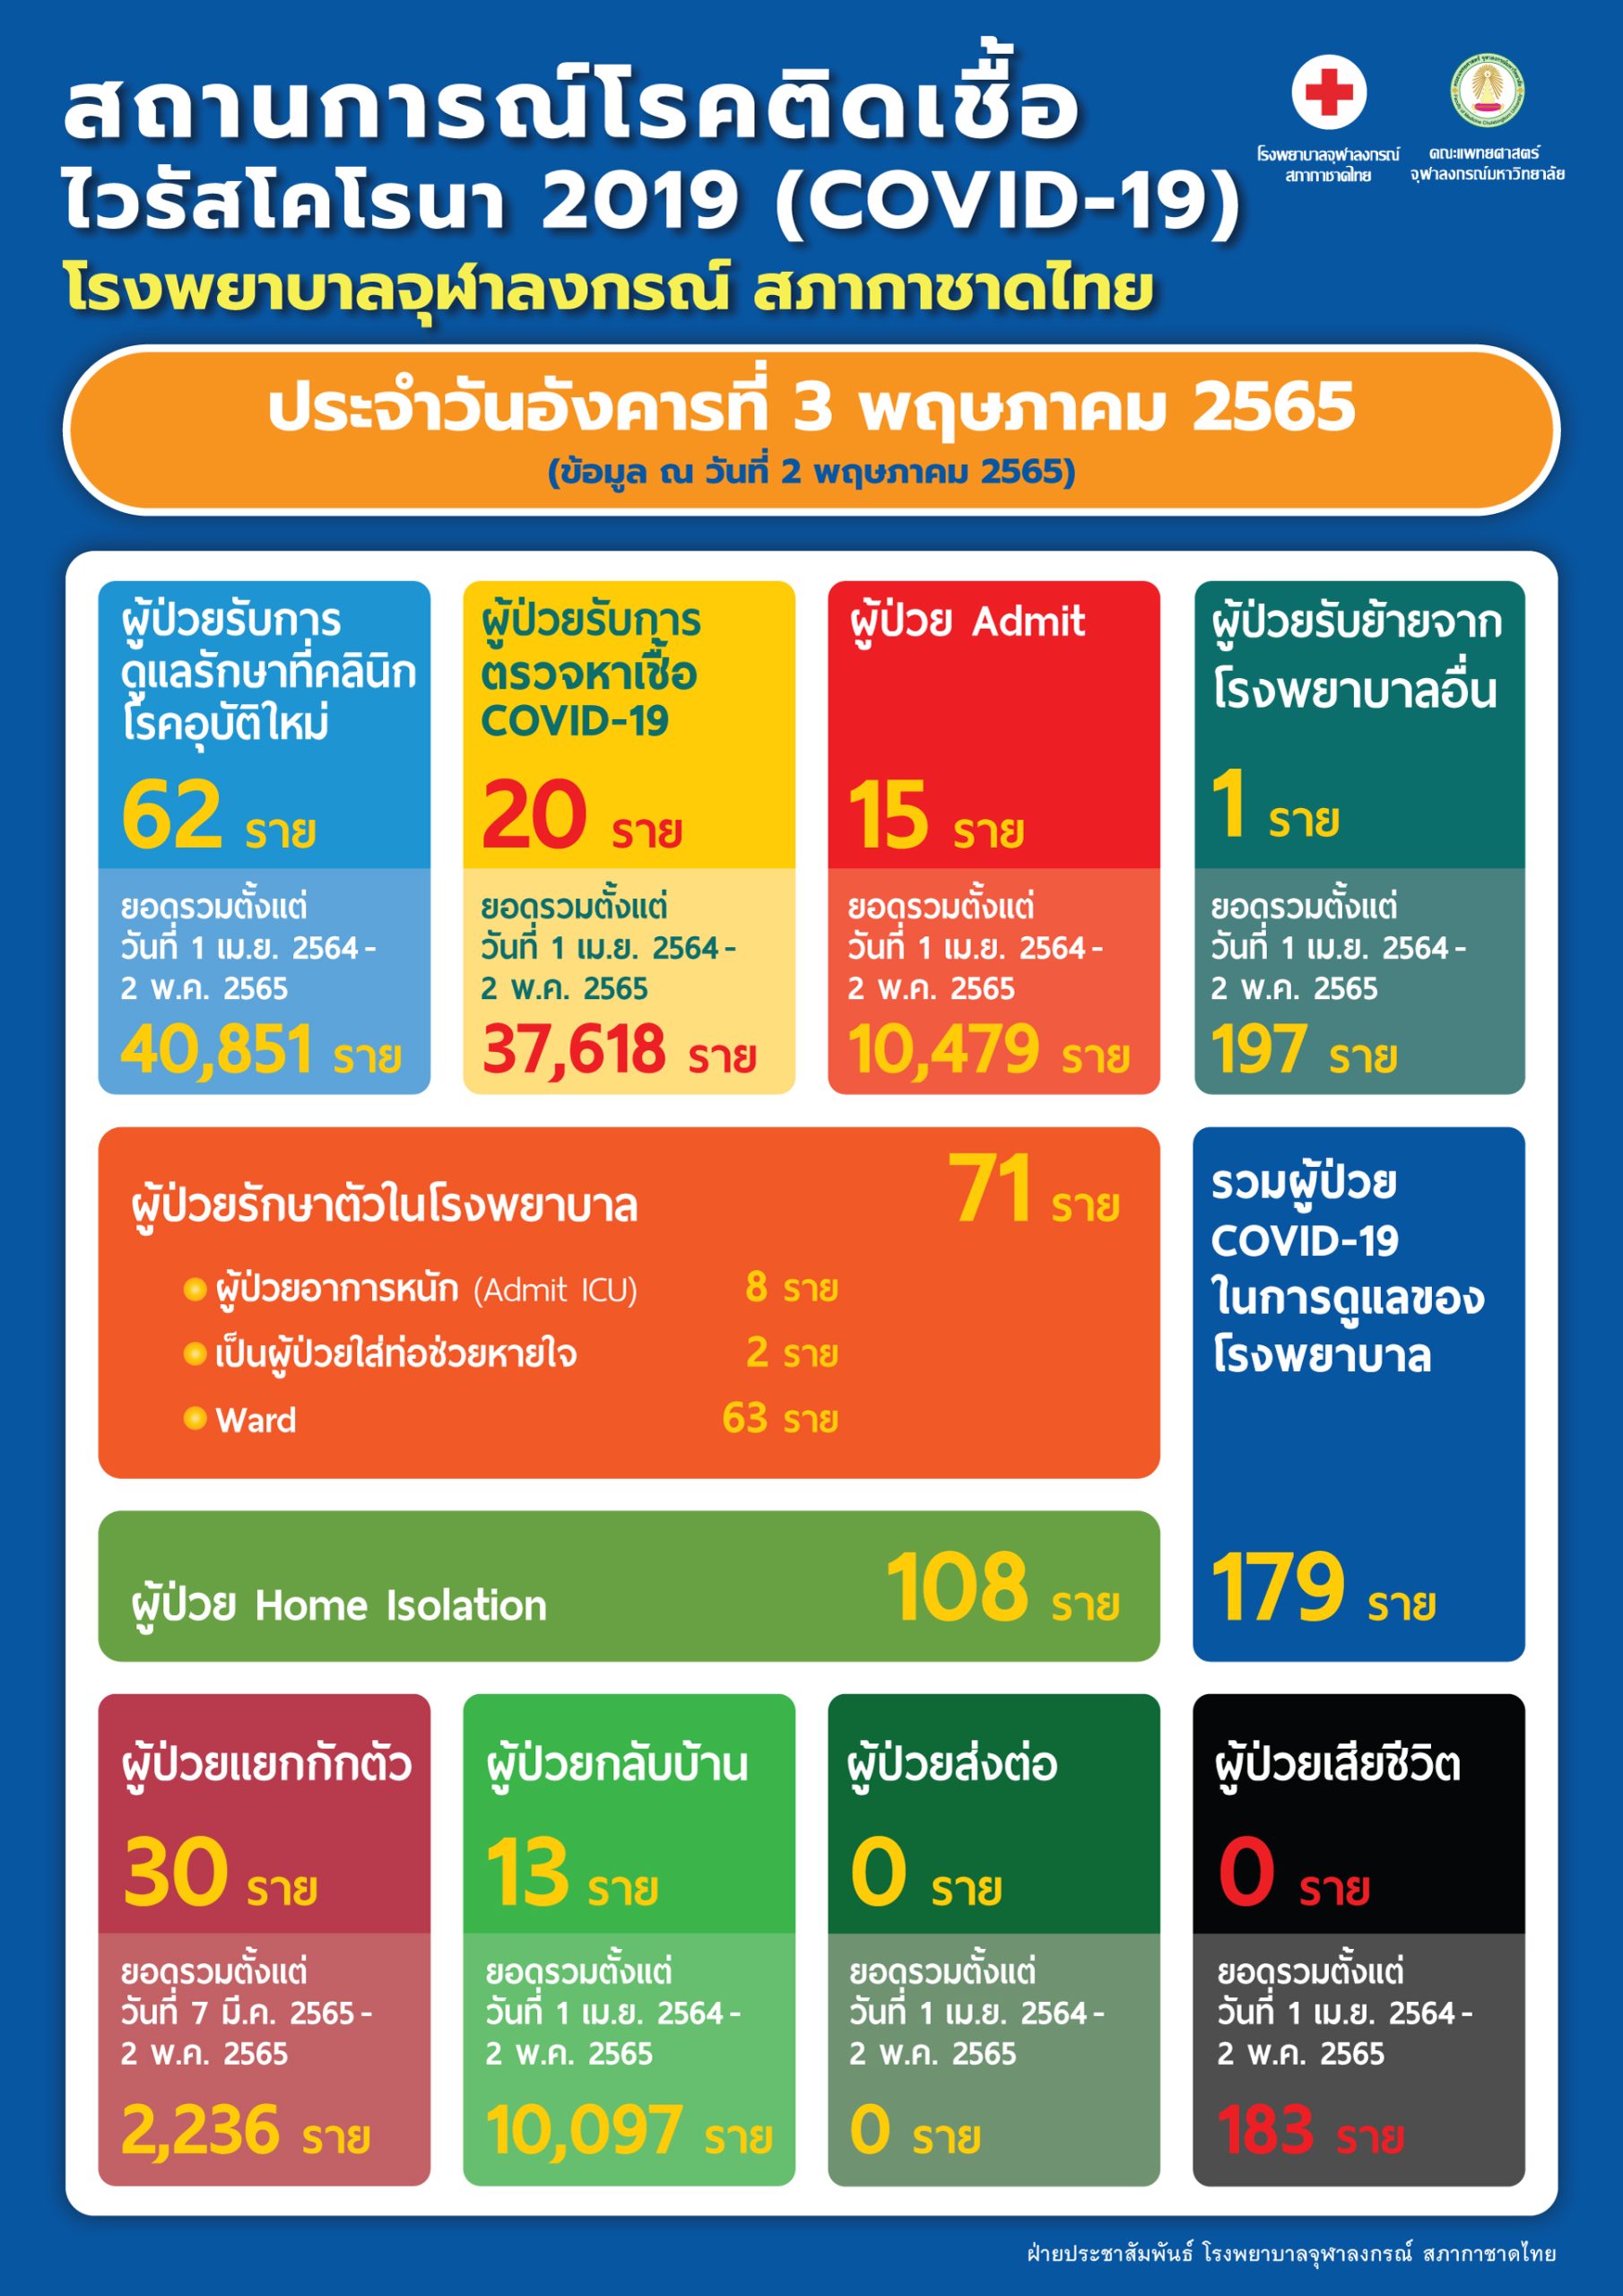 สถานการณ์โรคติดเชื้อ ไวรัสโคโรนา 2019 (COVID-19) โรงพยาบาลจุฬาลงกรณ์ สภากาชาดไทย ประจำวันอังคารที่ 3 พฤษภาคม 2565